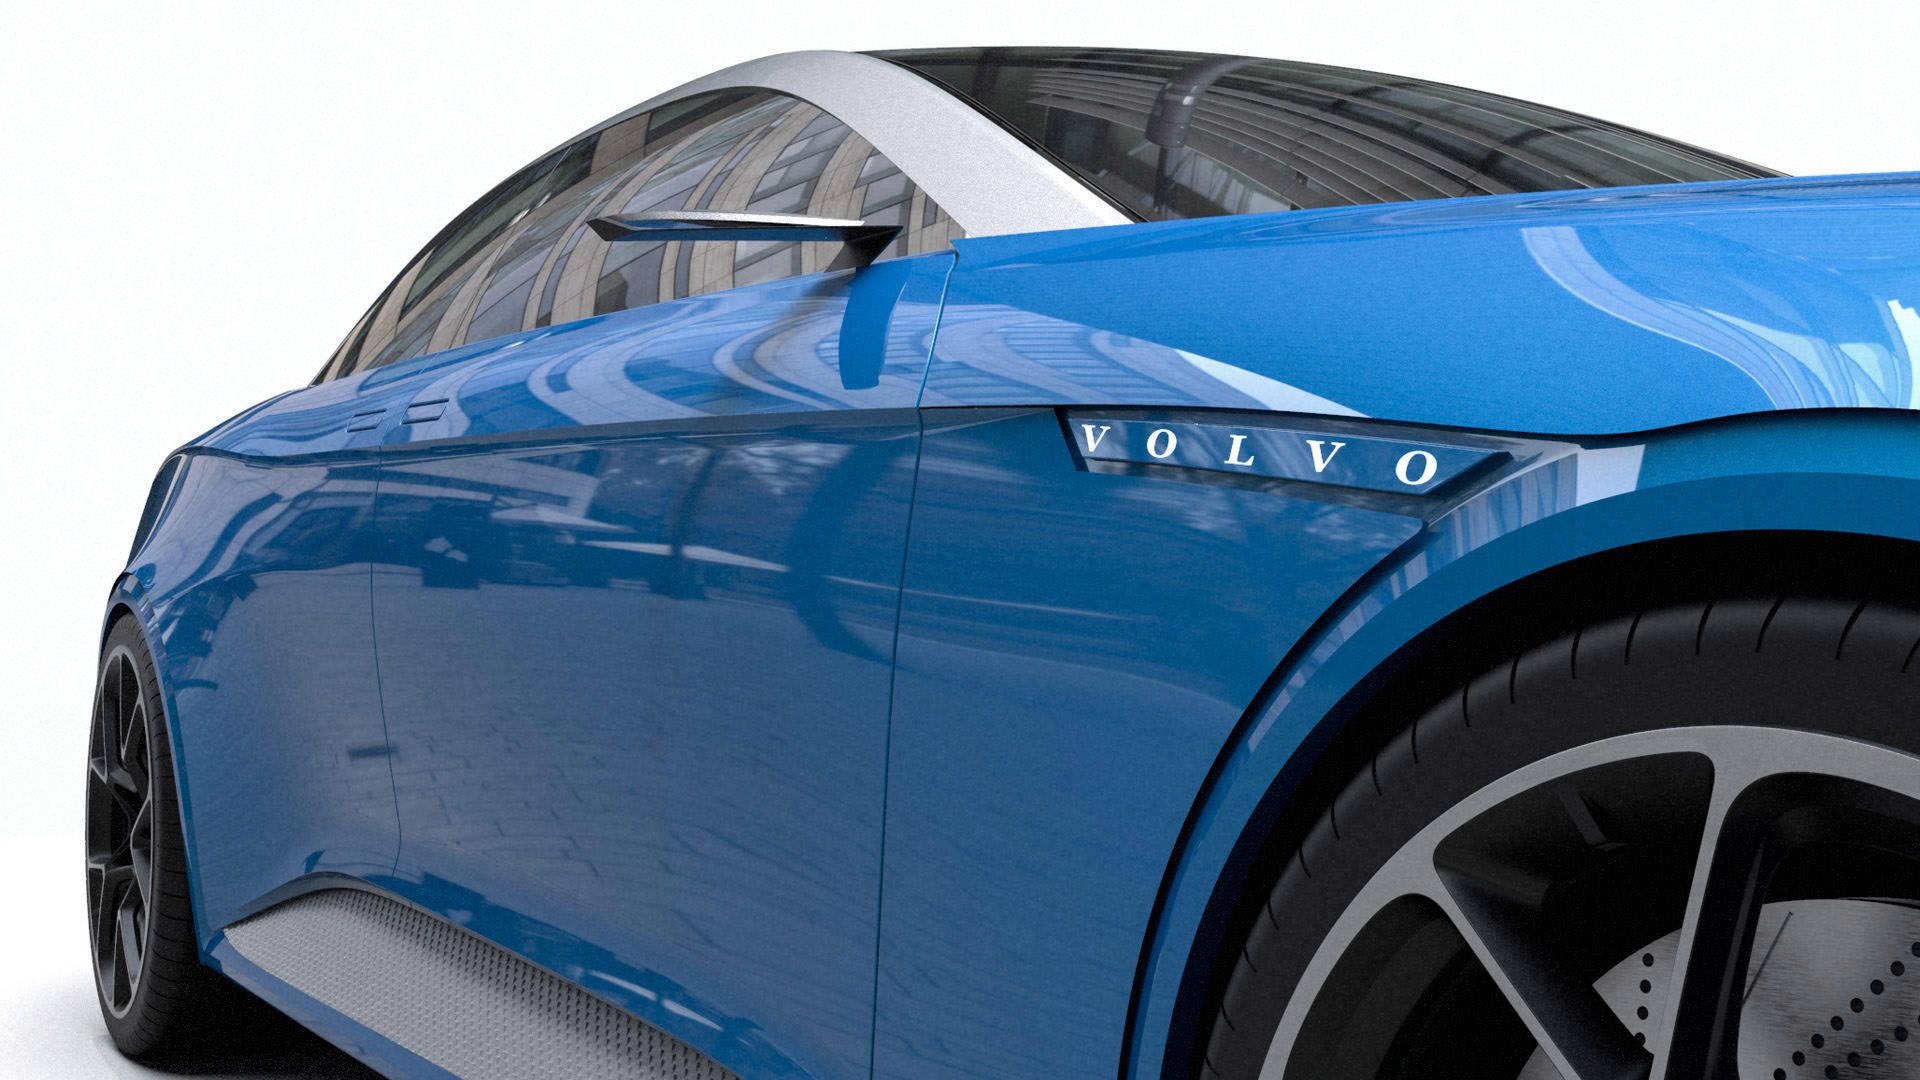 چرخ جلو خودروی مفهومی ولوو کریگر / Volvo Krigare آبی رنگ